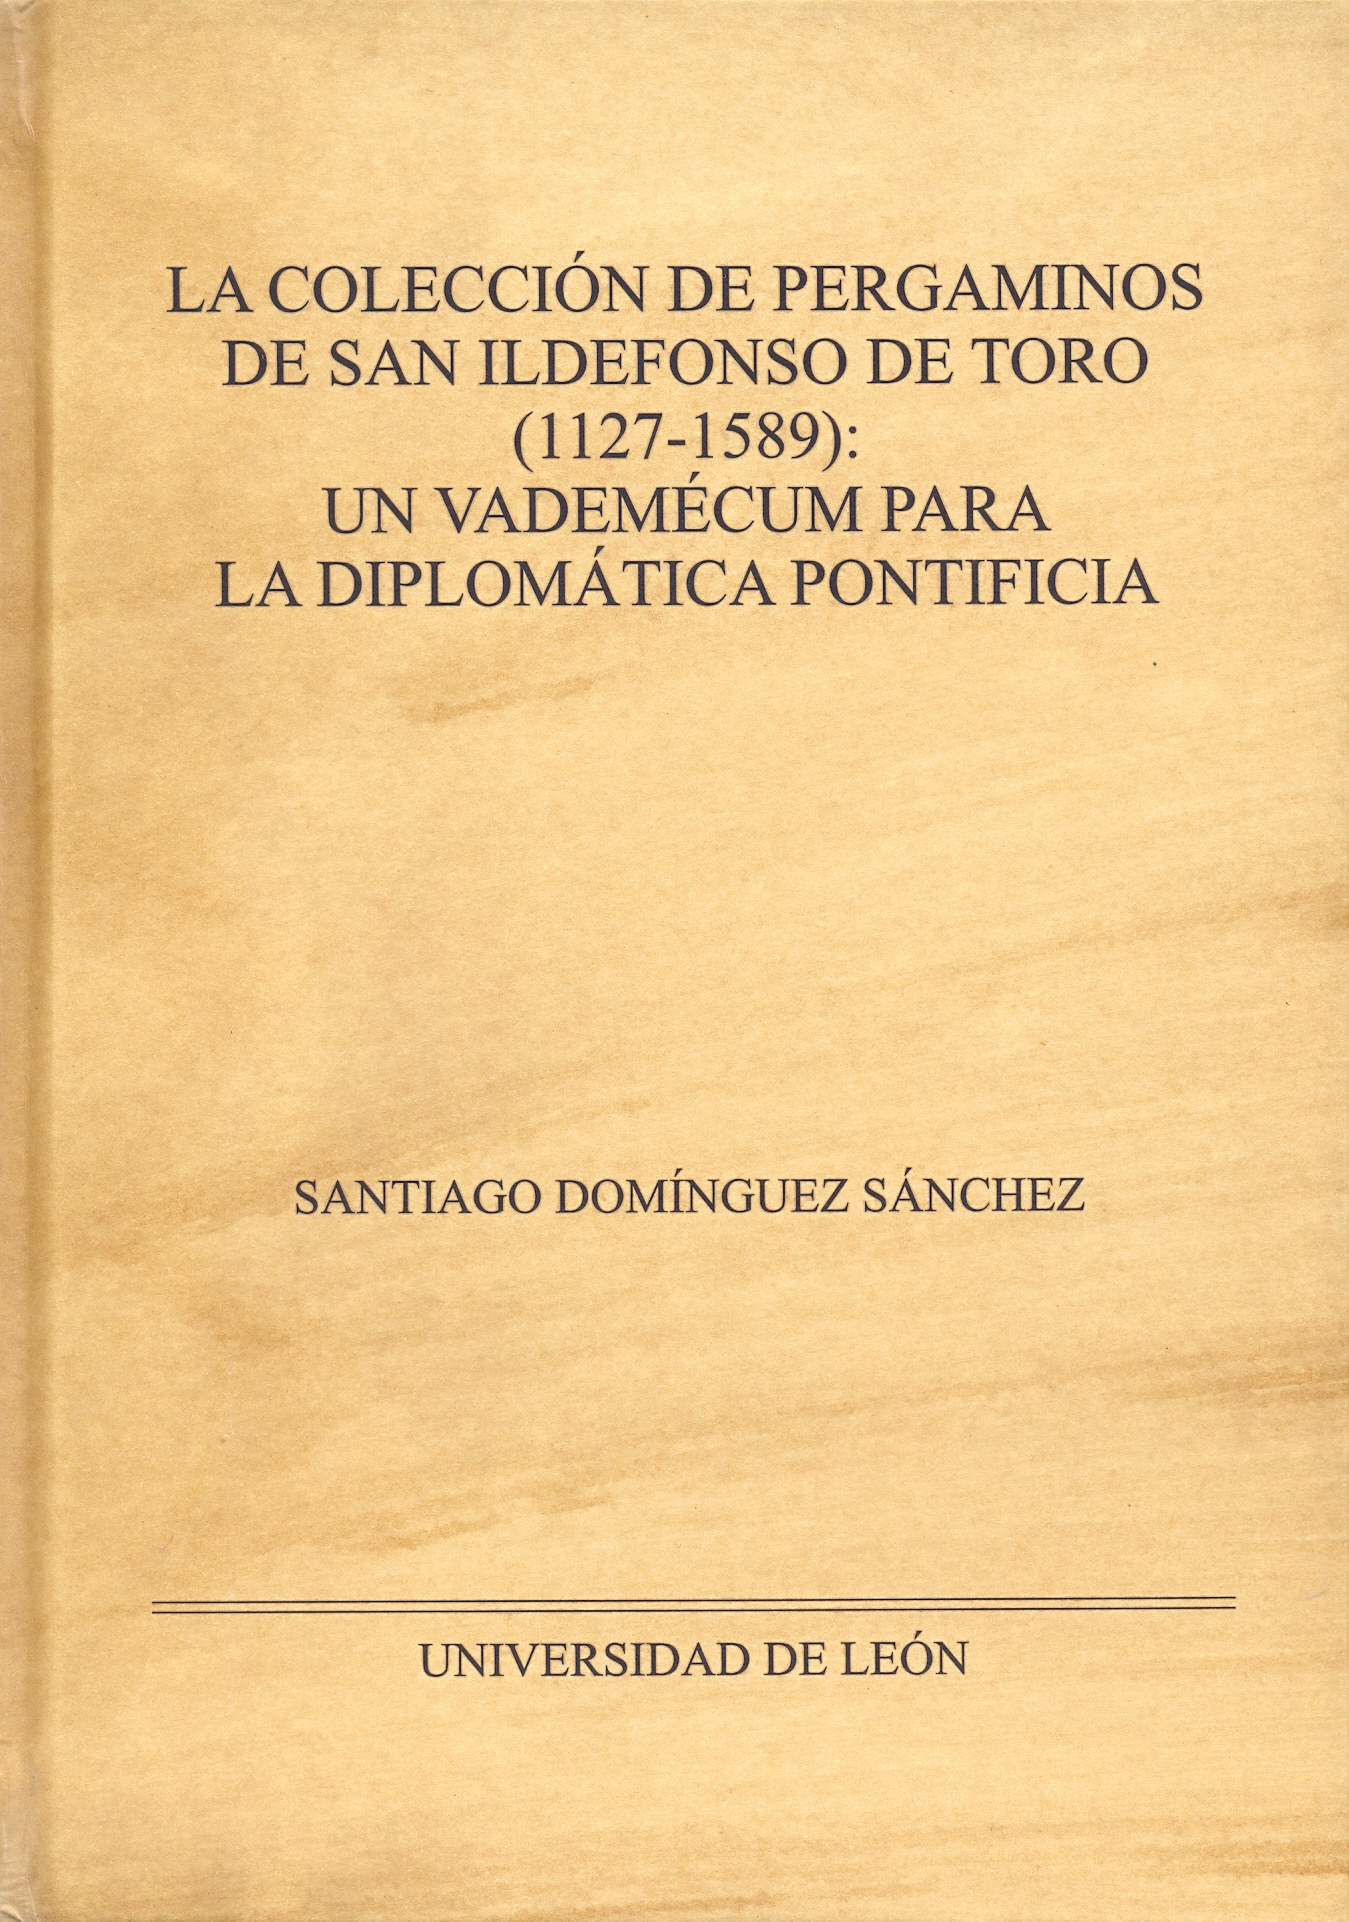 Imagen de portada del libro La colección de pergaminos de San Ildefonso de Toro (1227-1589)